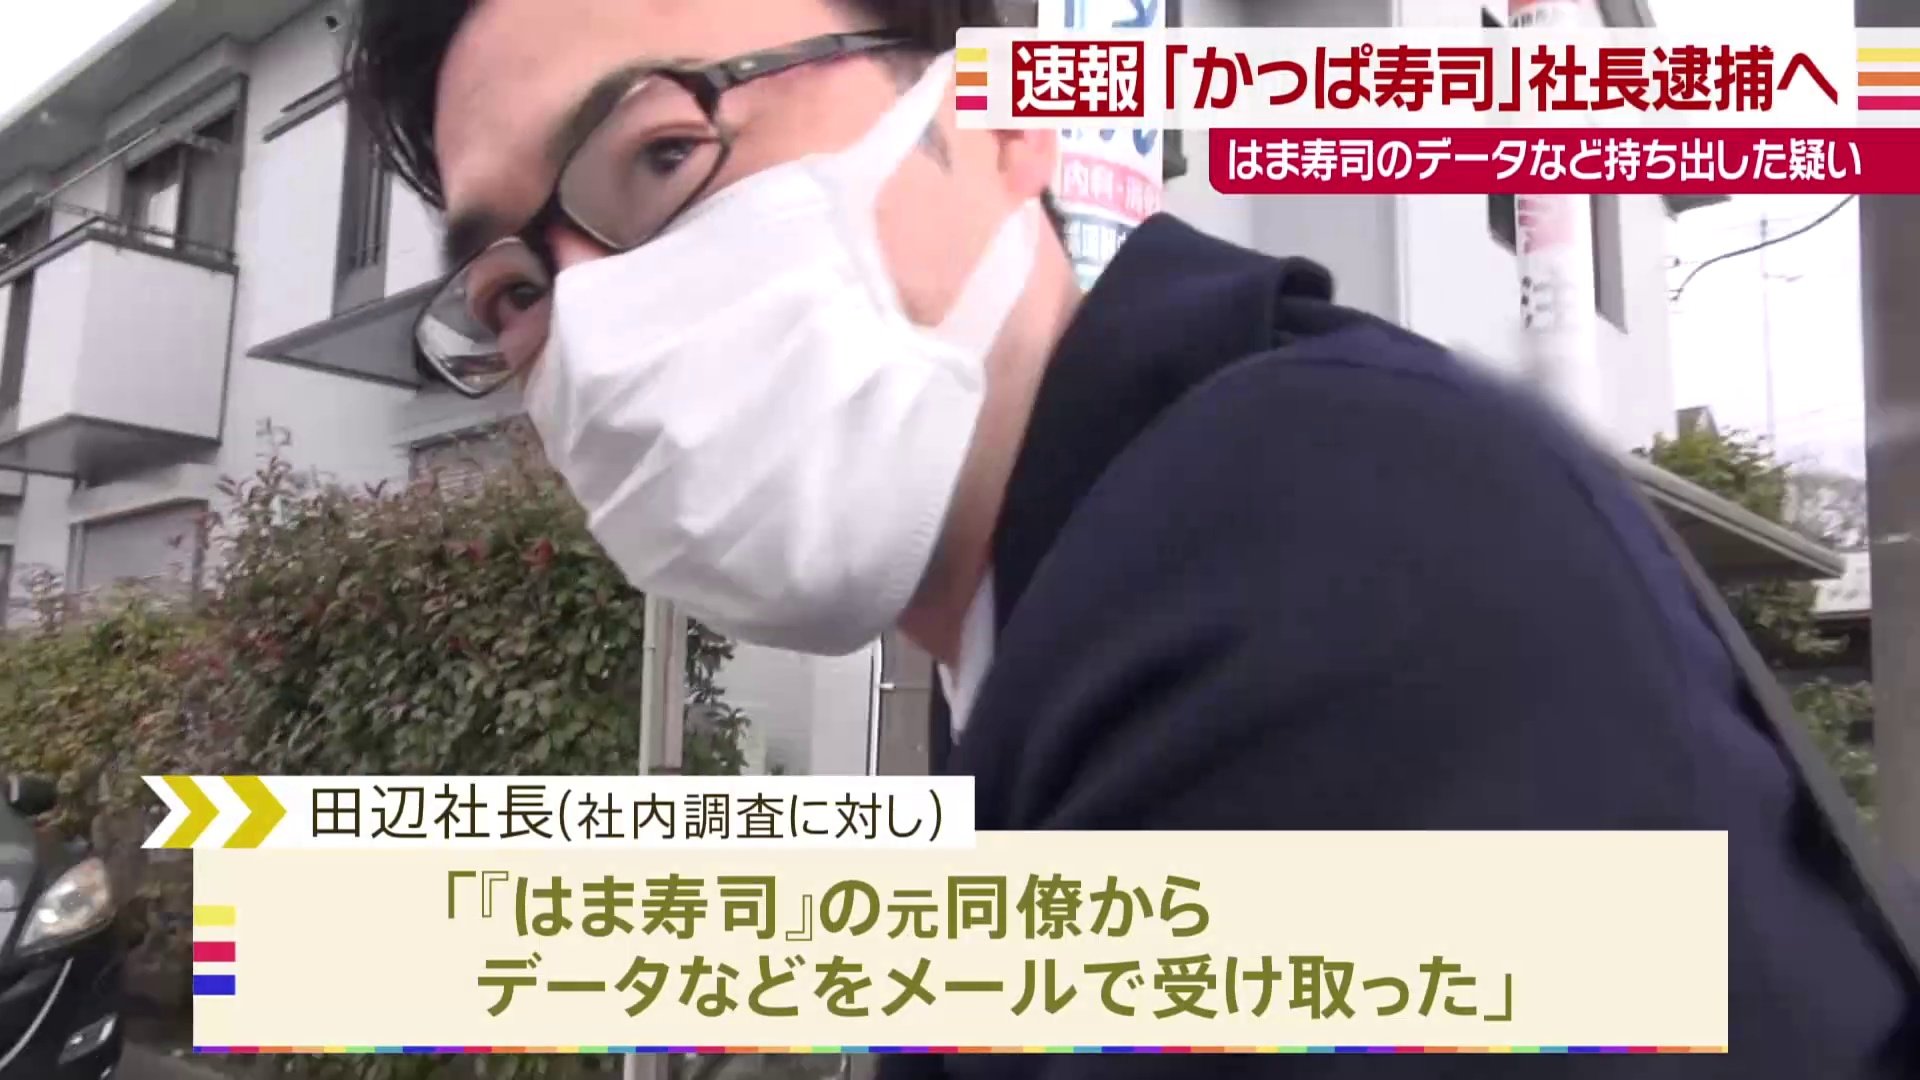 かっぱ寿司」社長の逮捕状を取得 前職の「はま寿司」から営業秘密持ち出しか | TBS NEWS DIG